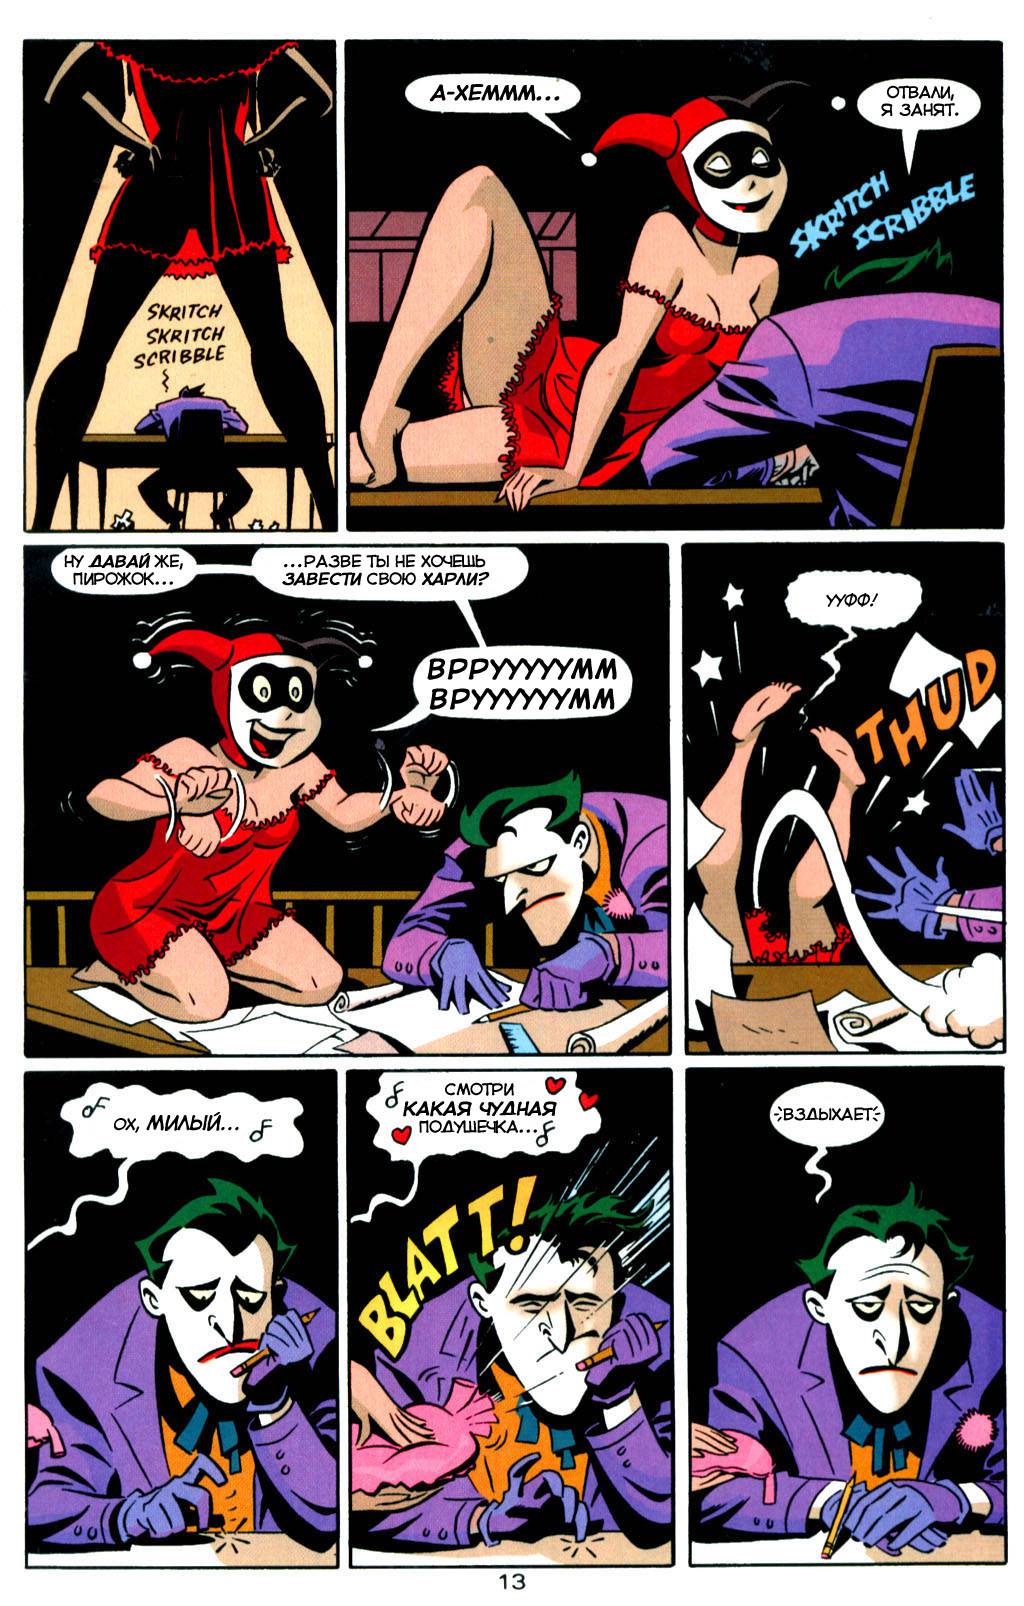 Бэтмен Приключения: Сумасшедшая Любовь (Batman Adventures: Mad Love) -  страница 14 - читать комикс онлайн бесплатно | UniComics